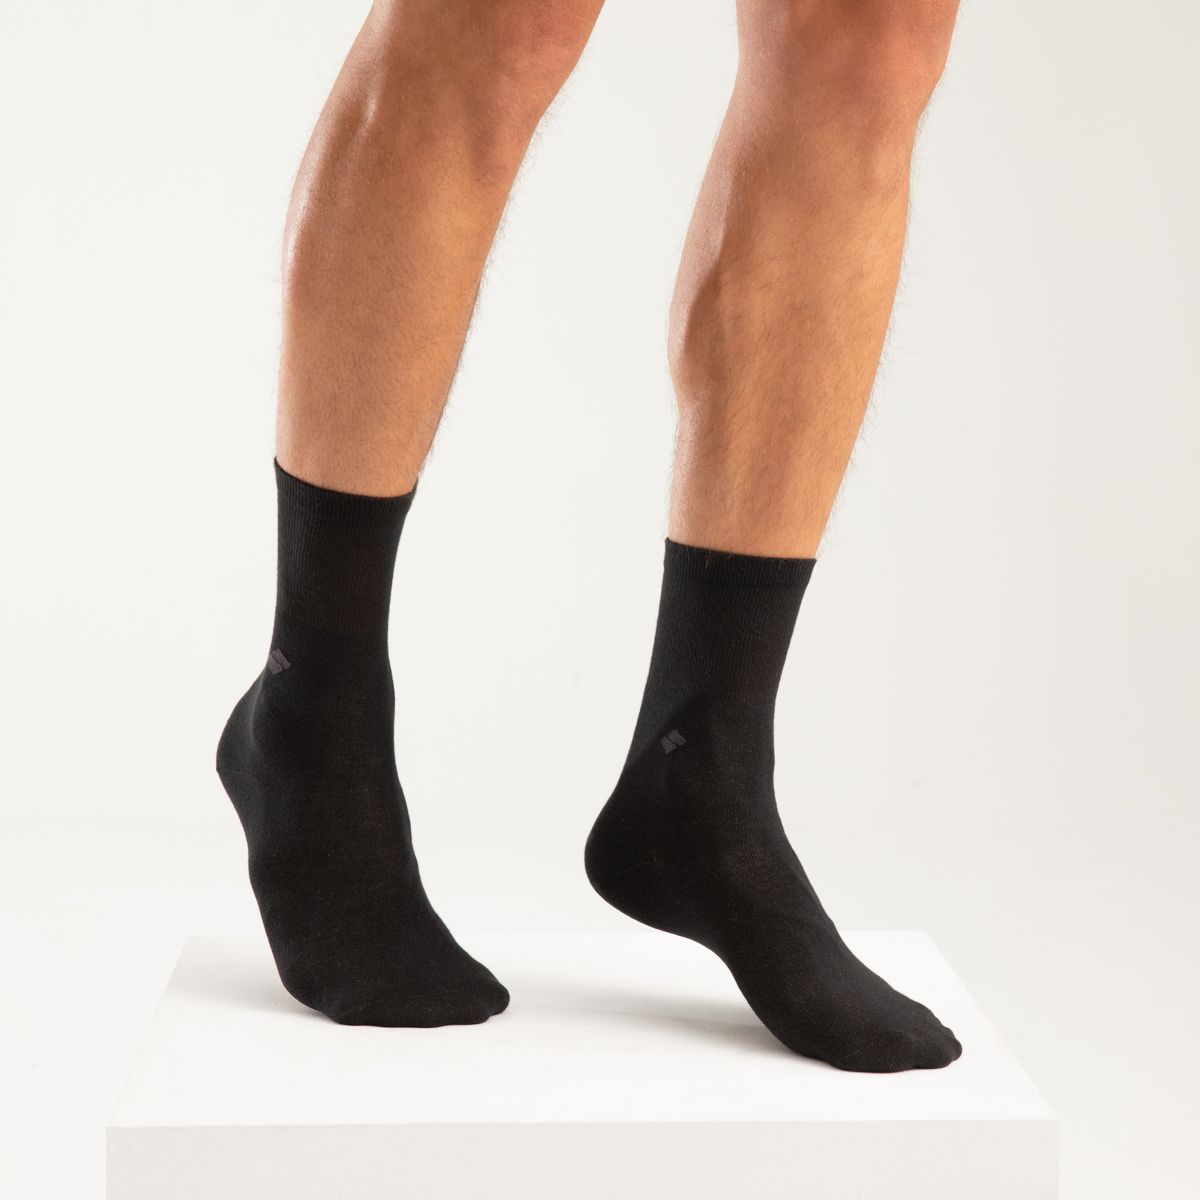 bonnysilver diabetic silver socks worn by male model